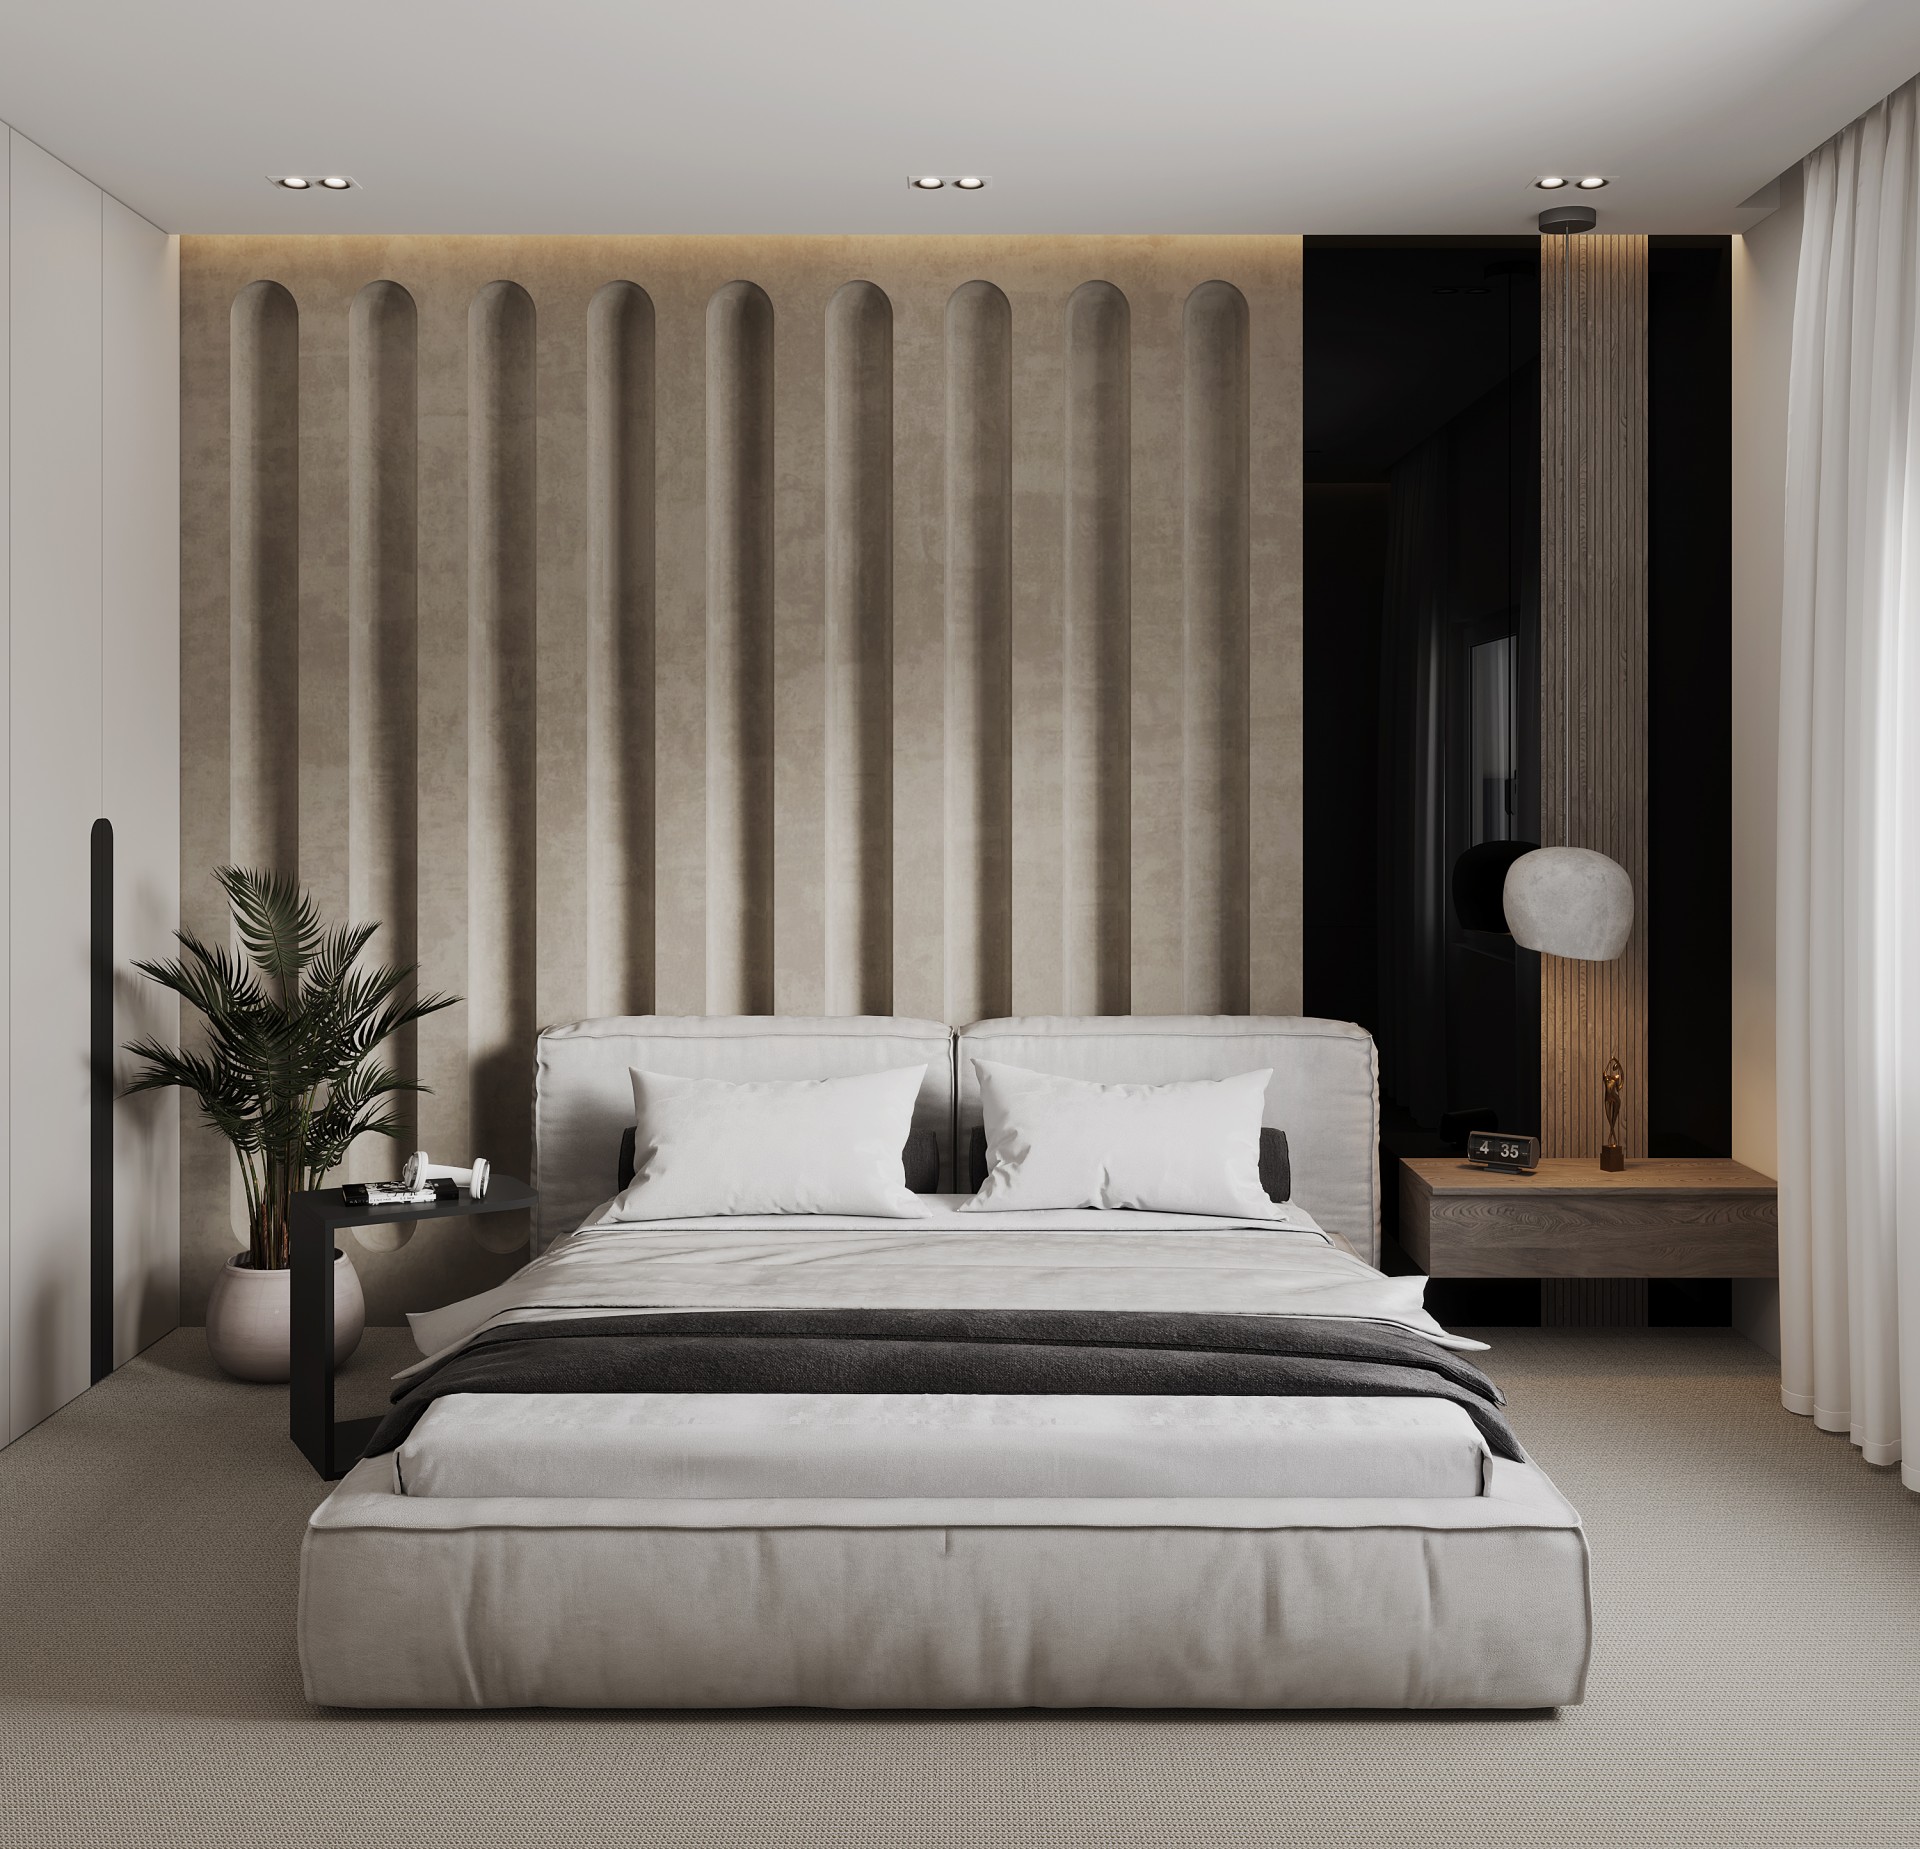 VWArtclub - Elegant Bedroom